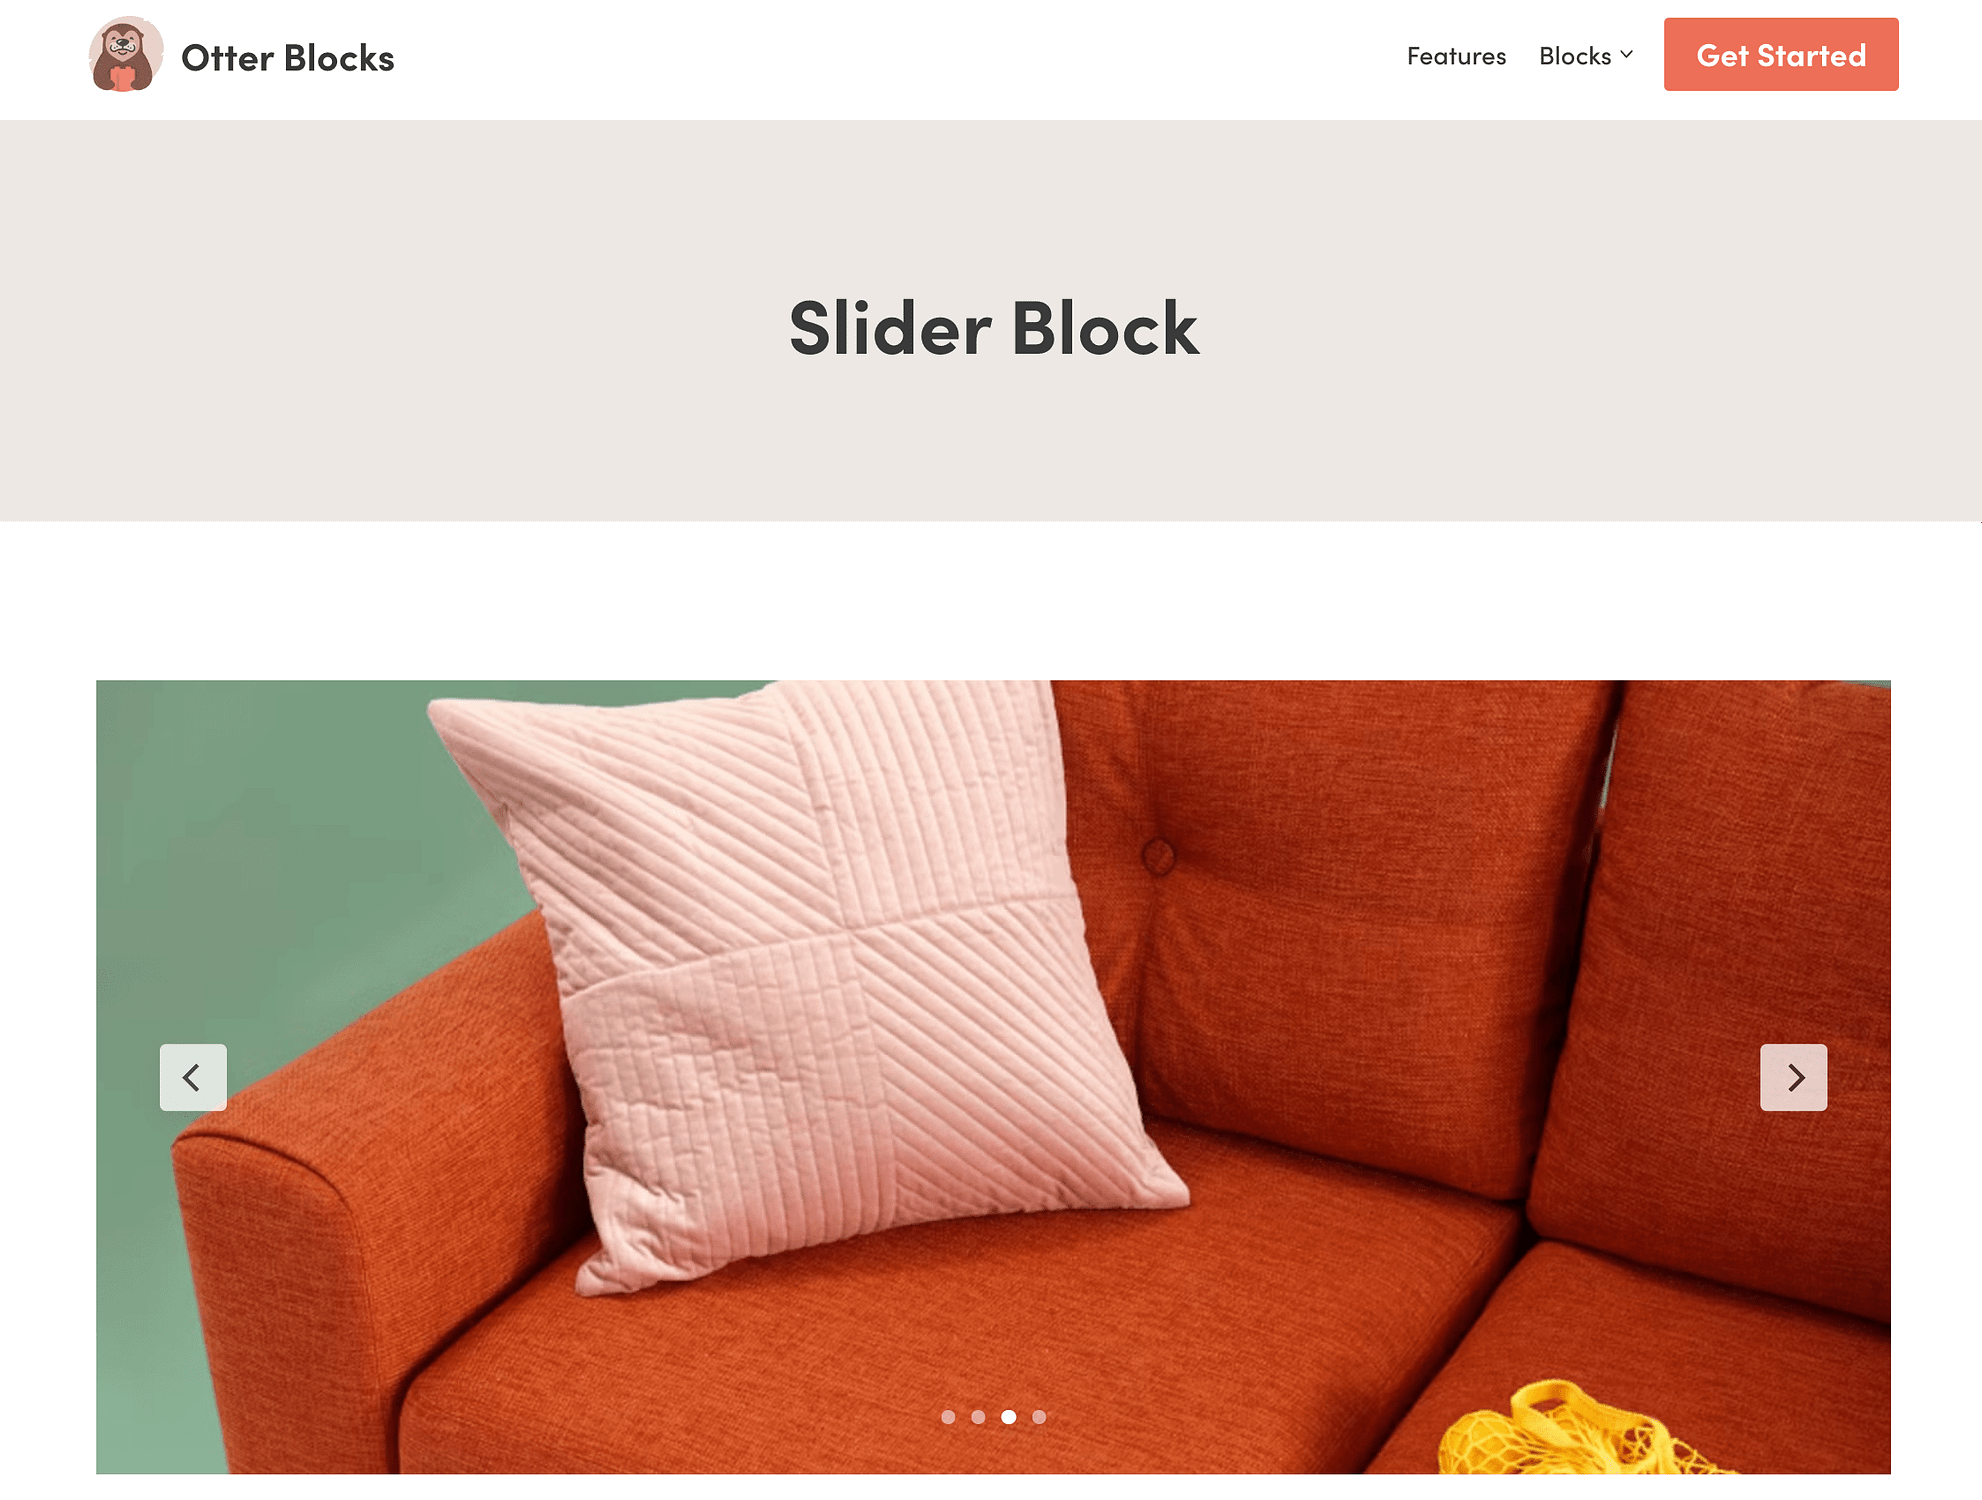 Otter Blocks' Slider Block.